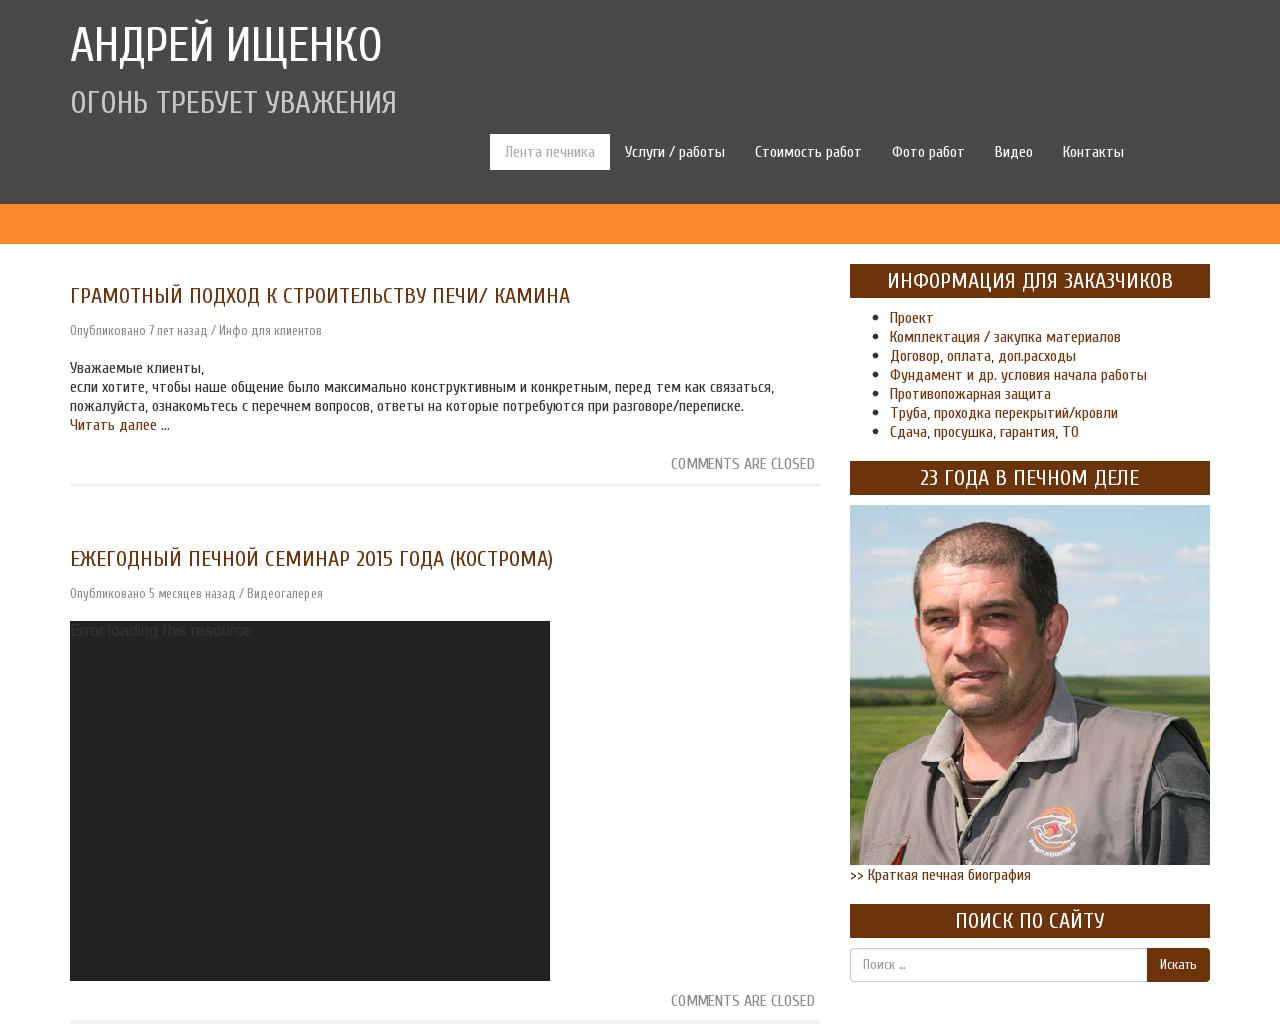 Изображение сайта андрей-ищенко.рф в разрешении 1280x1024